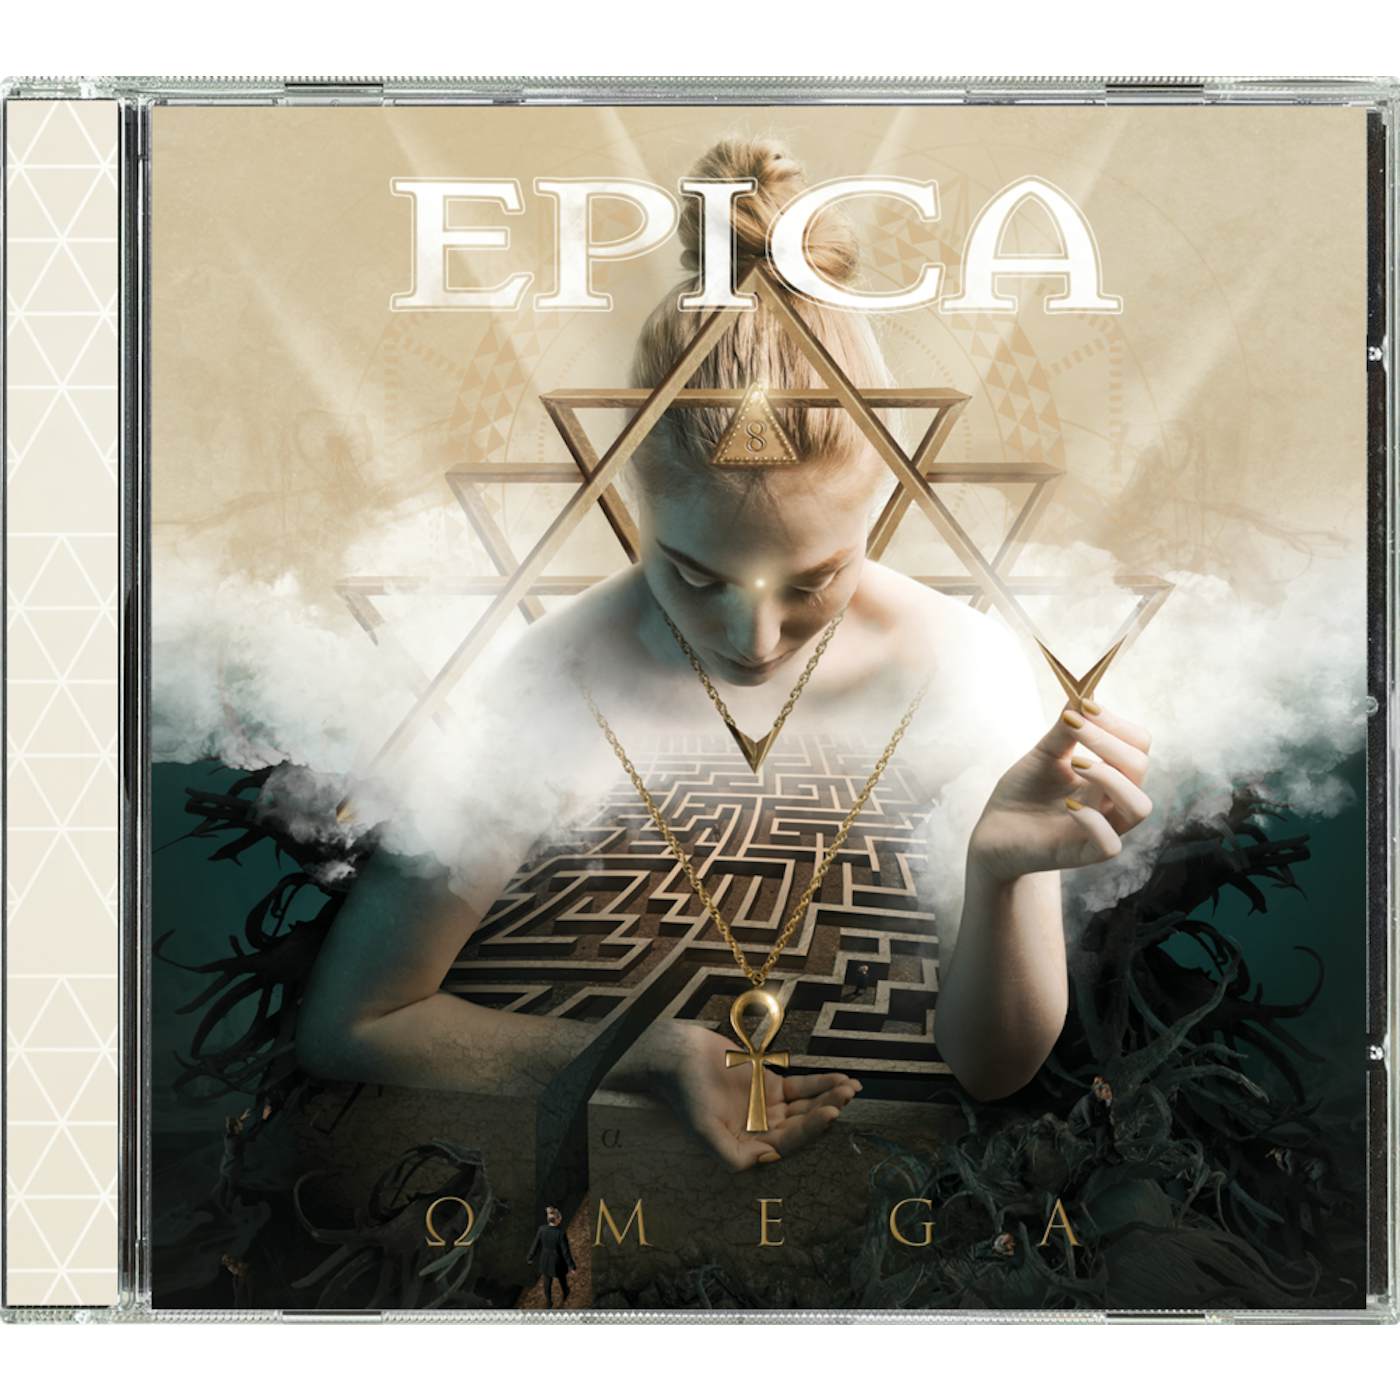 Epica "Omega" CD